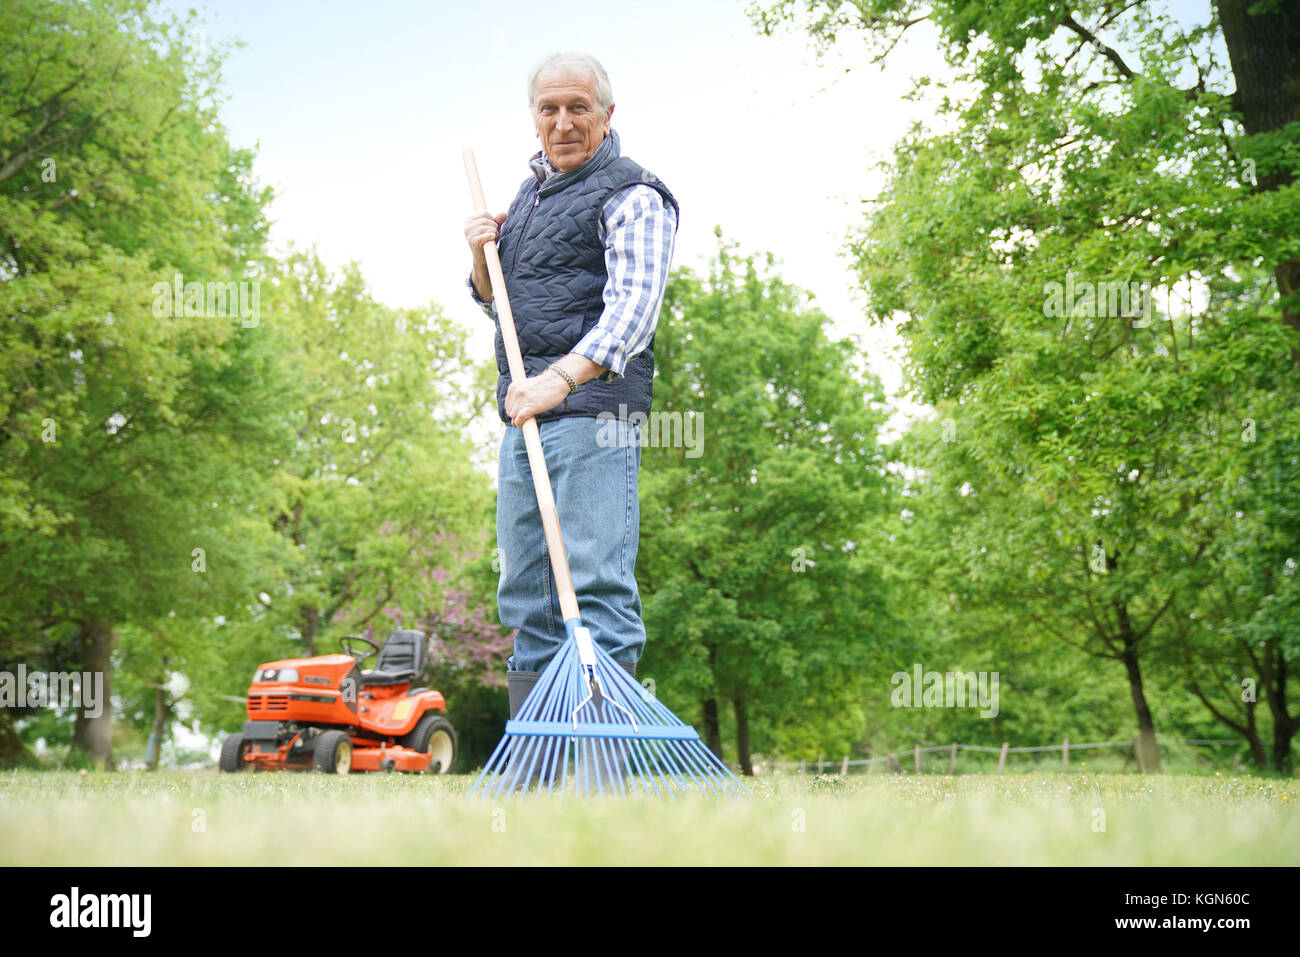 Man nettoyage jardin pelouse avec rake Banque D'Images